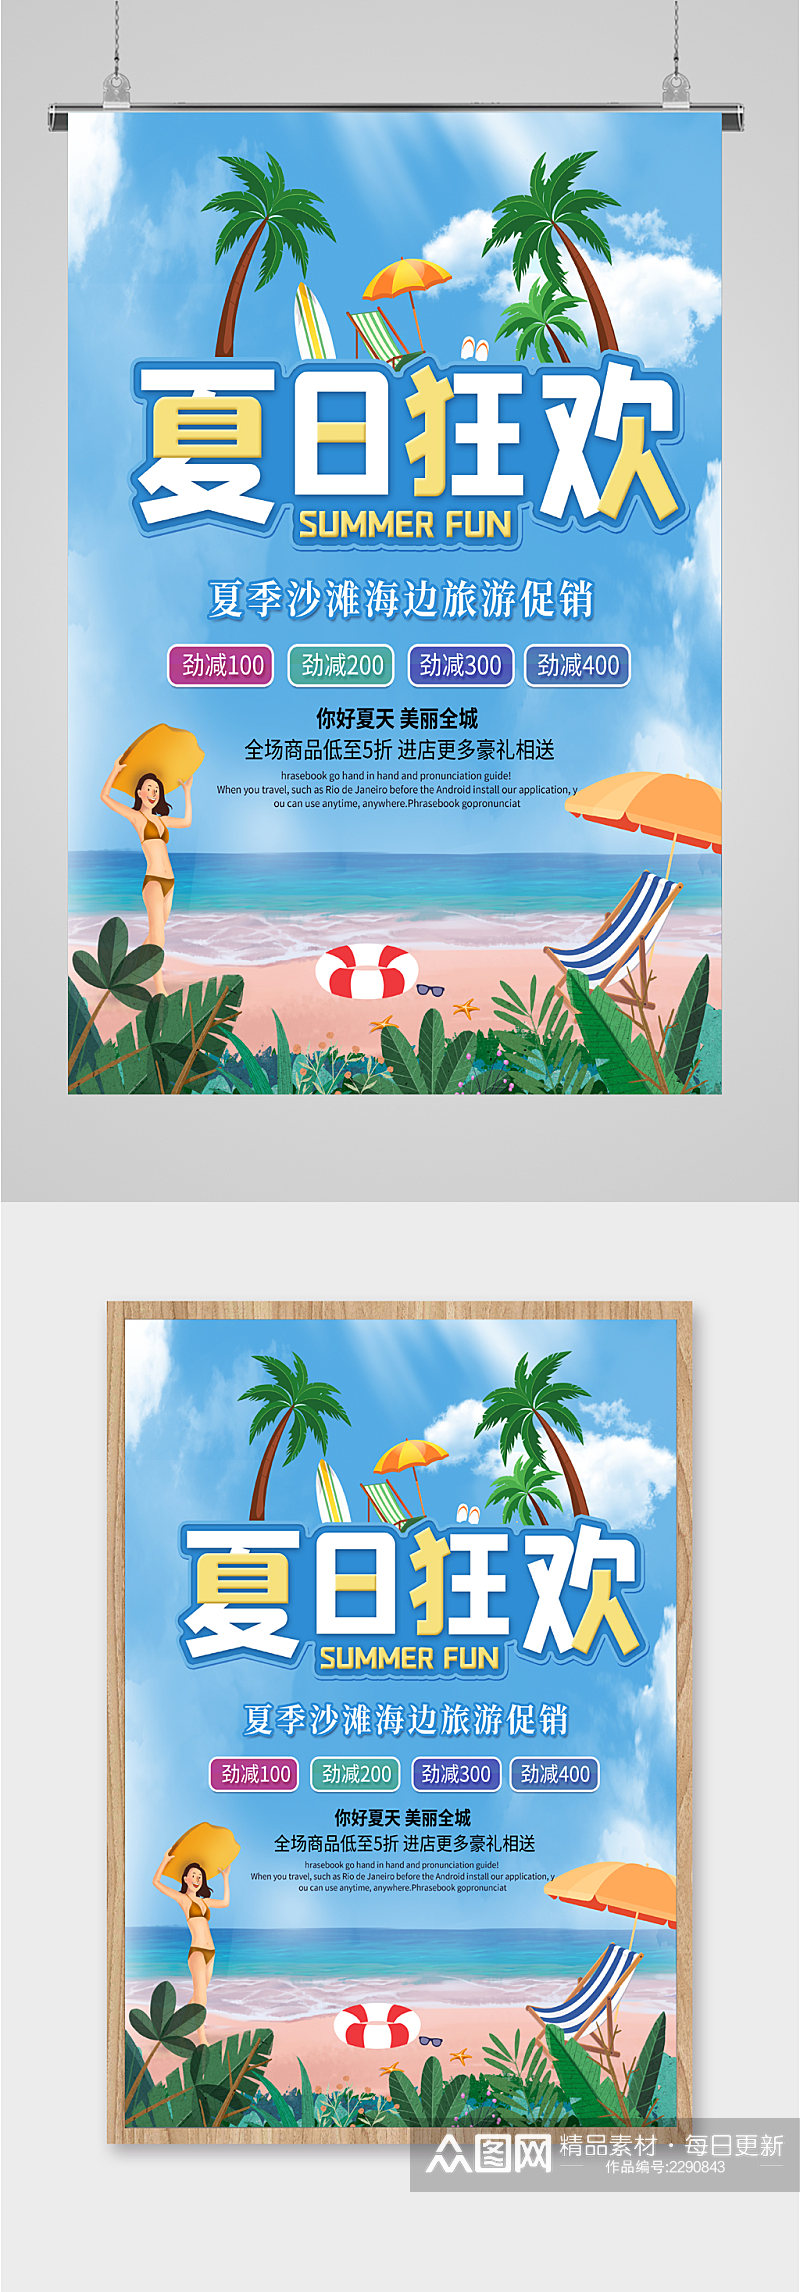 夏日狂欢沙滩海报旅游促销海报素材